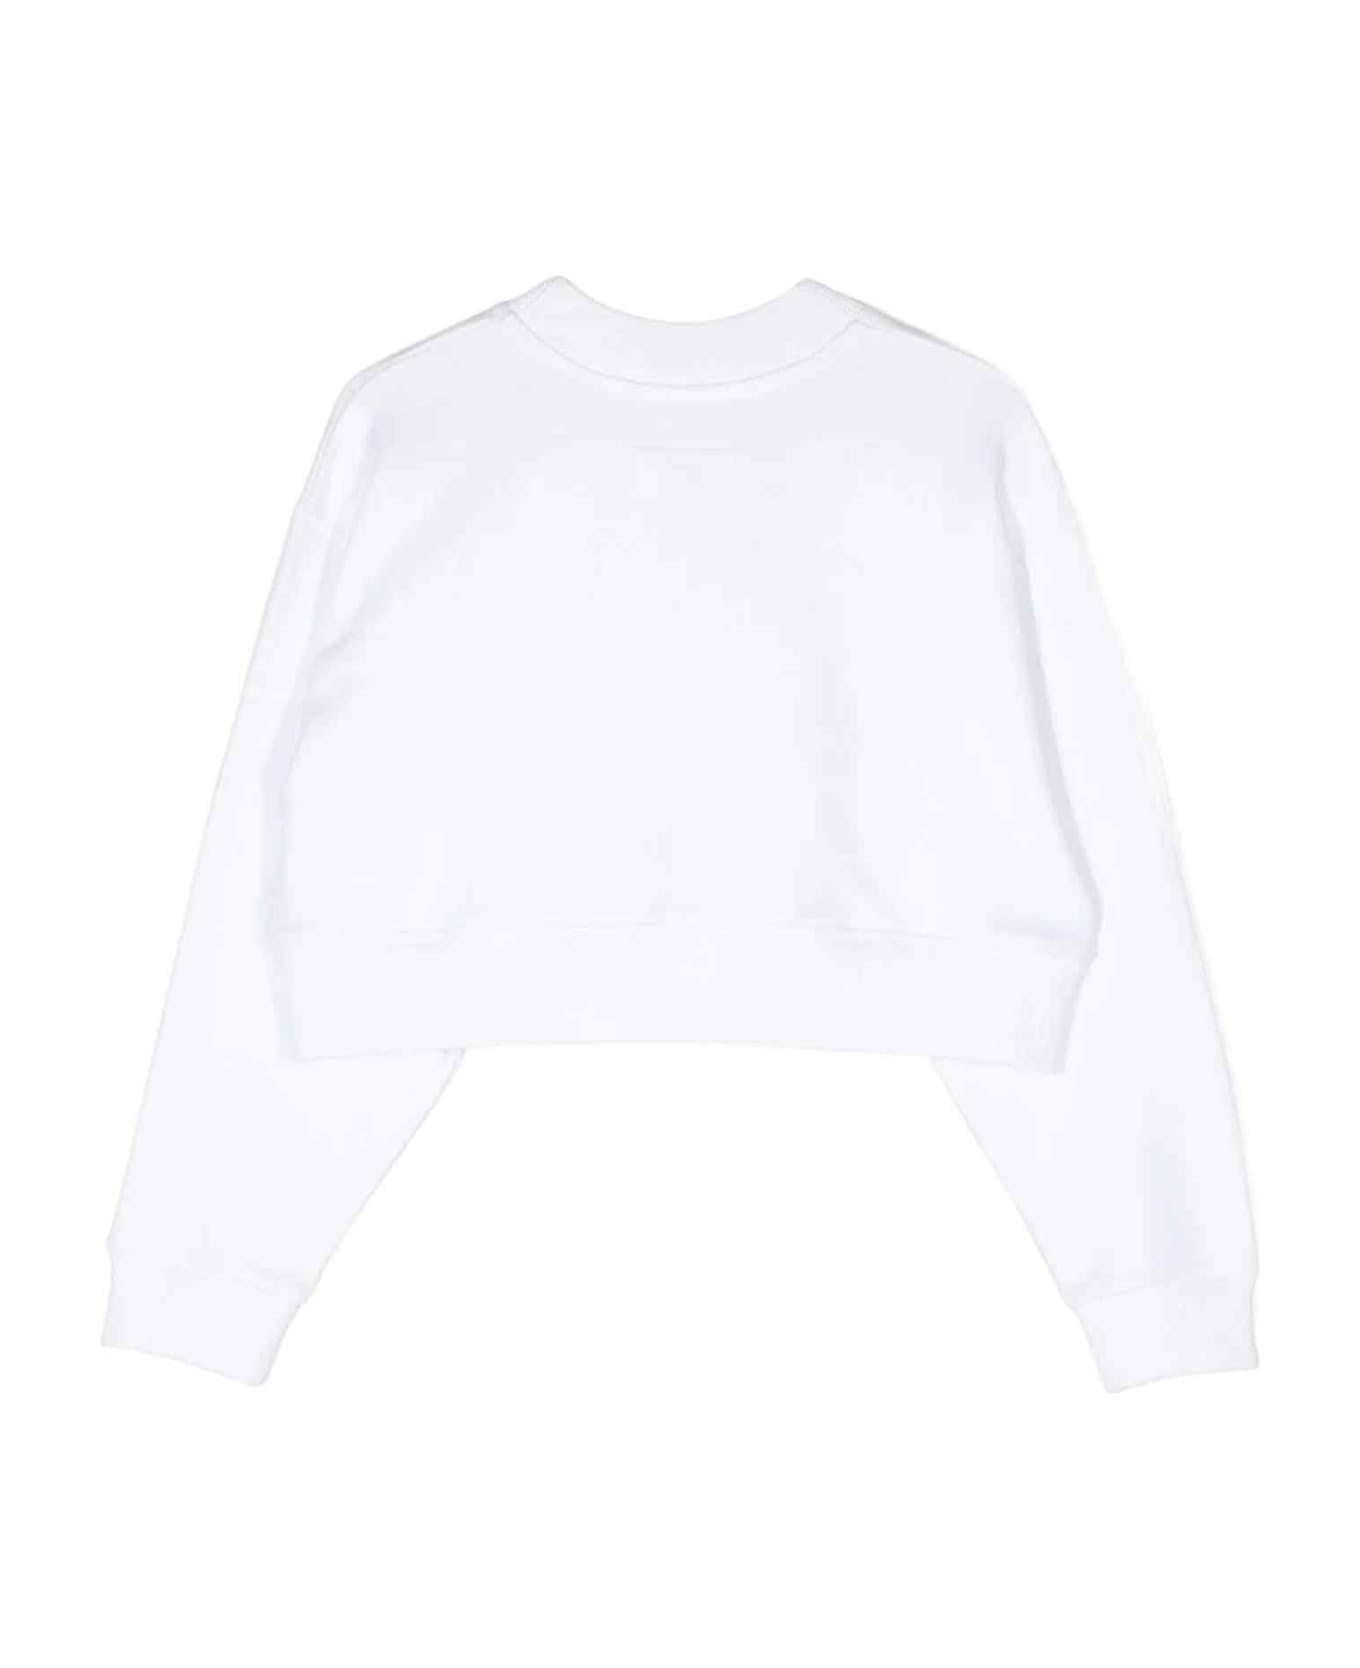 MM6 Maison Margiela White Sweatshirt Unisex - Bianco